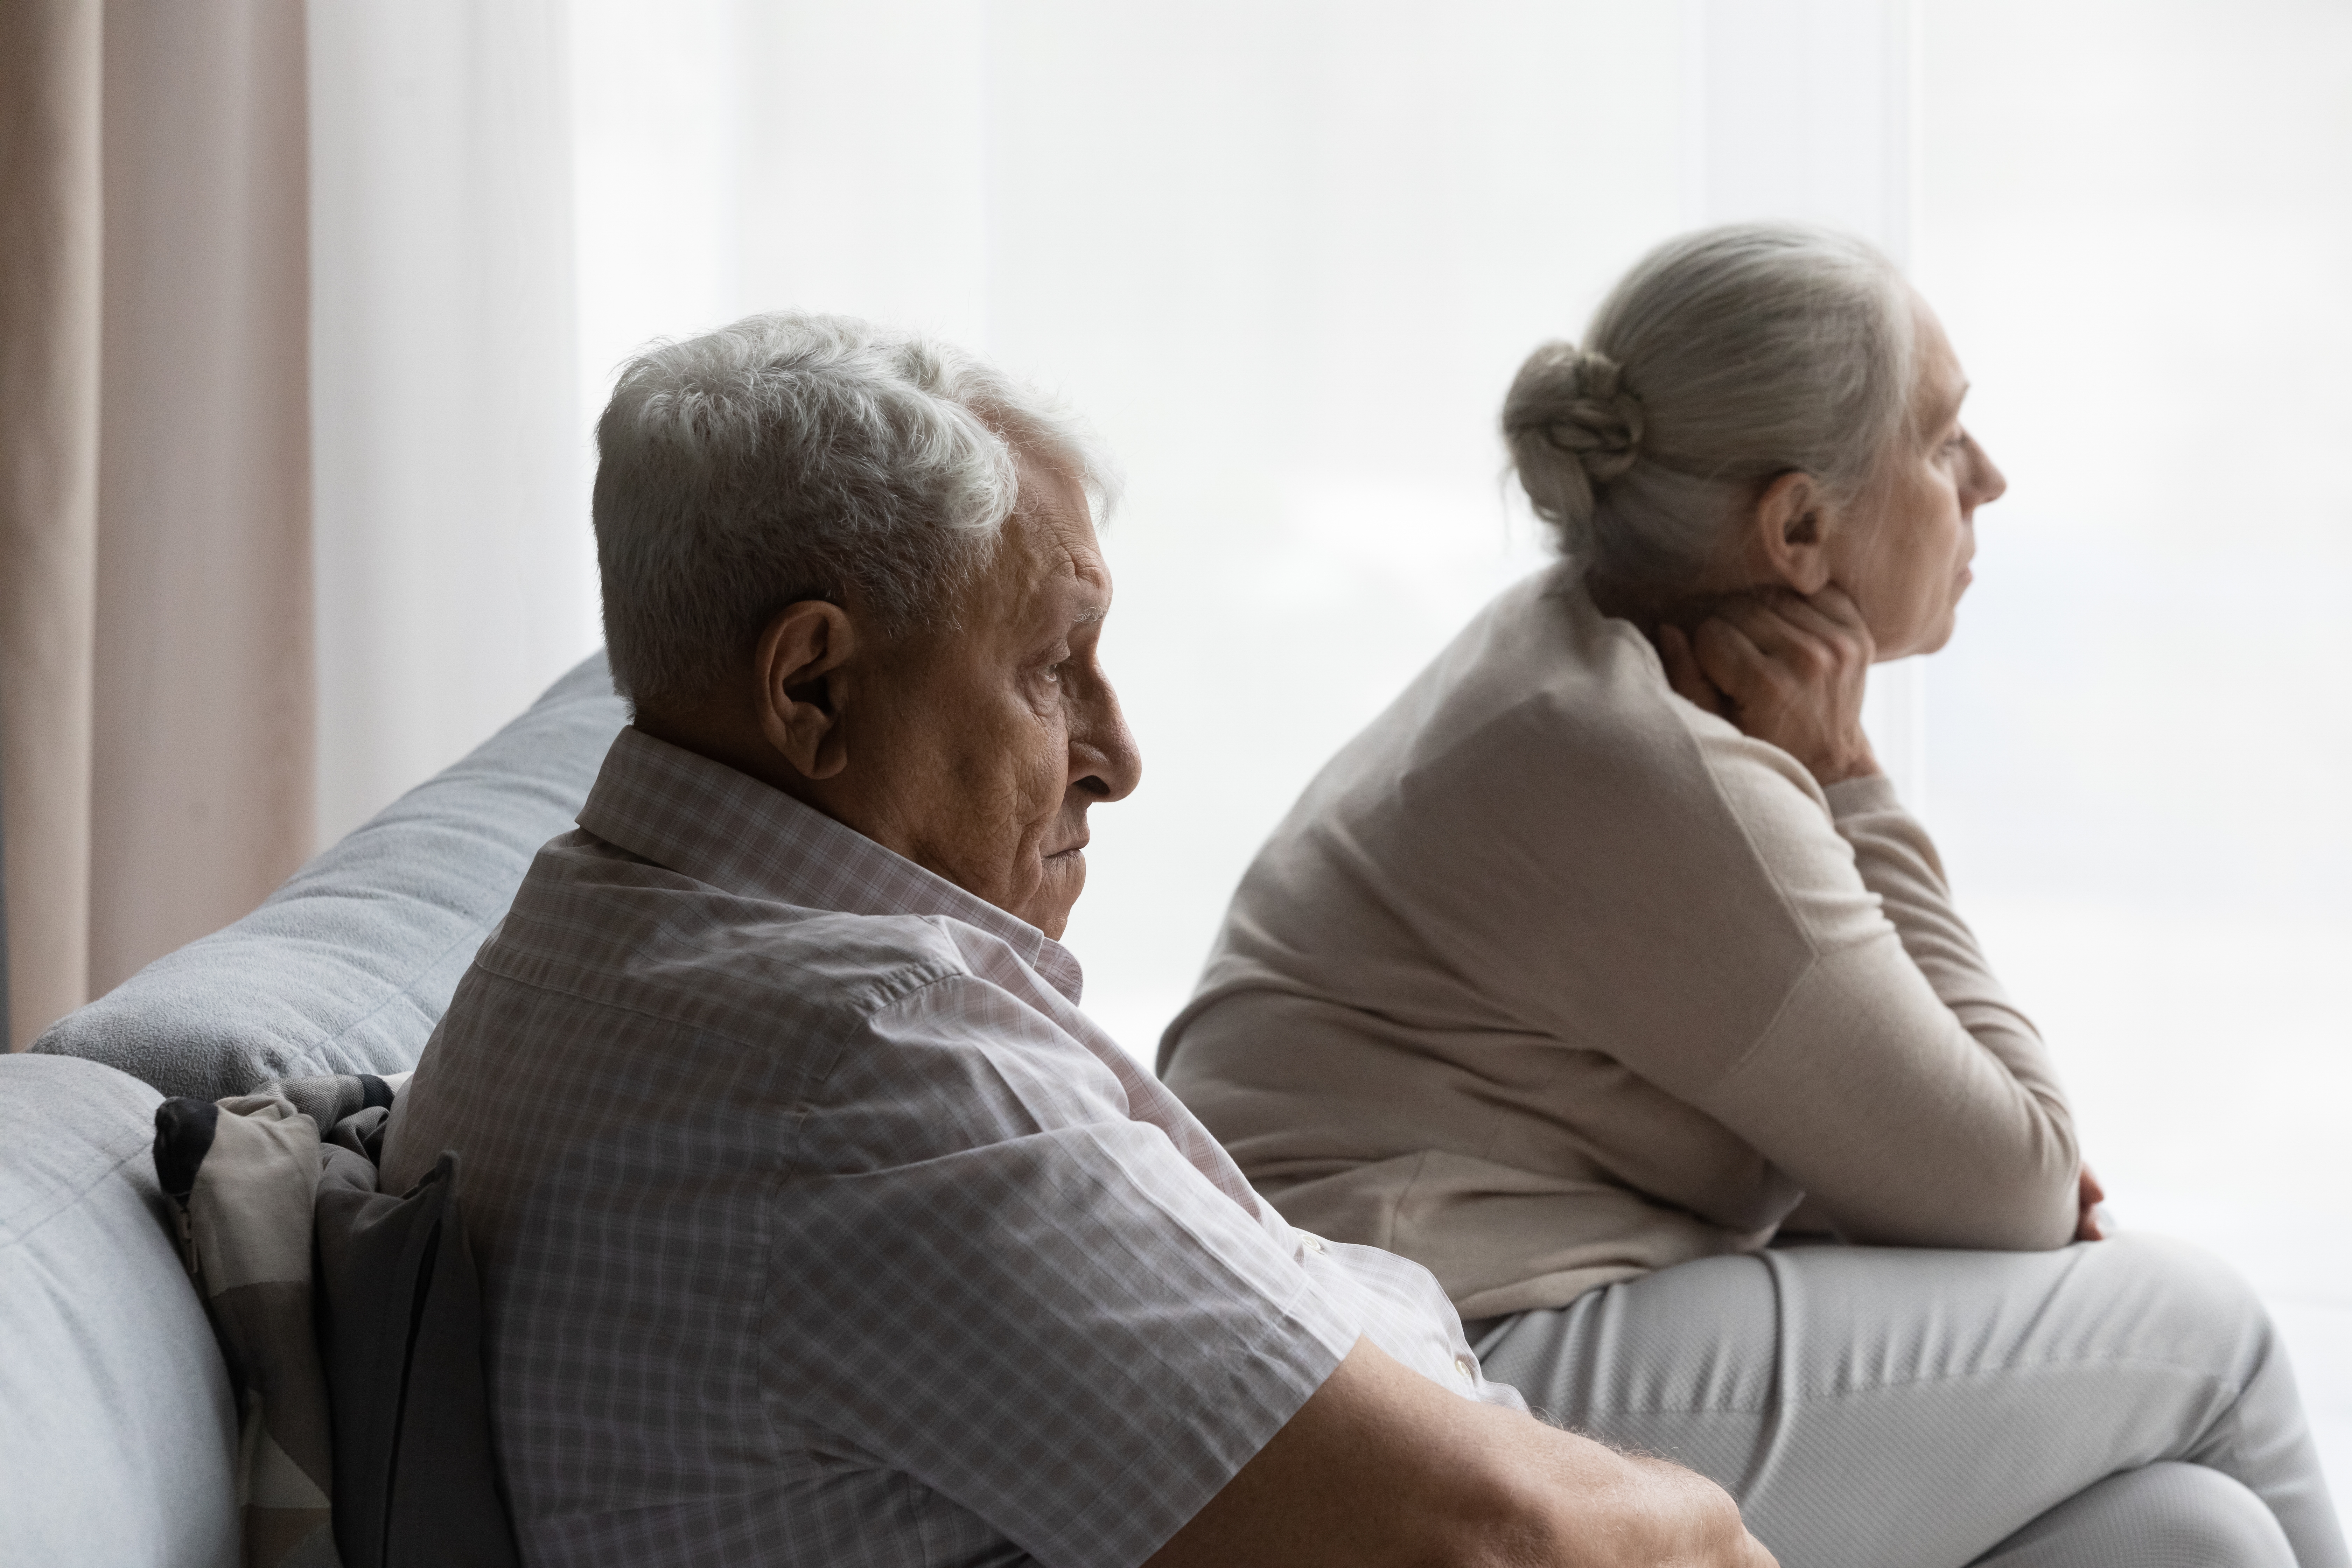 Ein ernst dreinblickendes älteres Paar | Quelle: Shutterstock